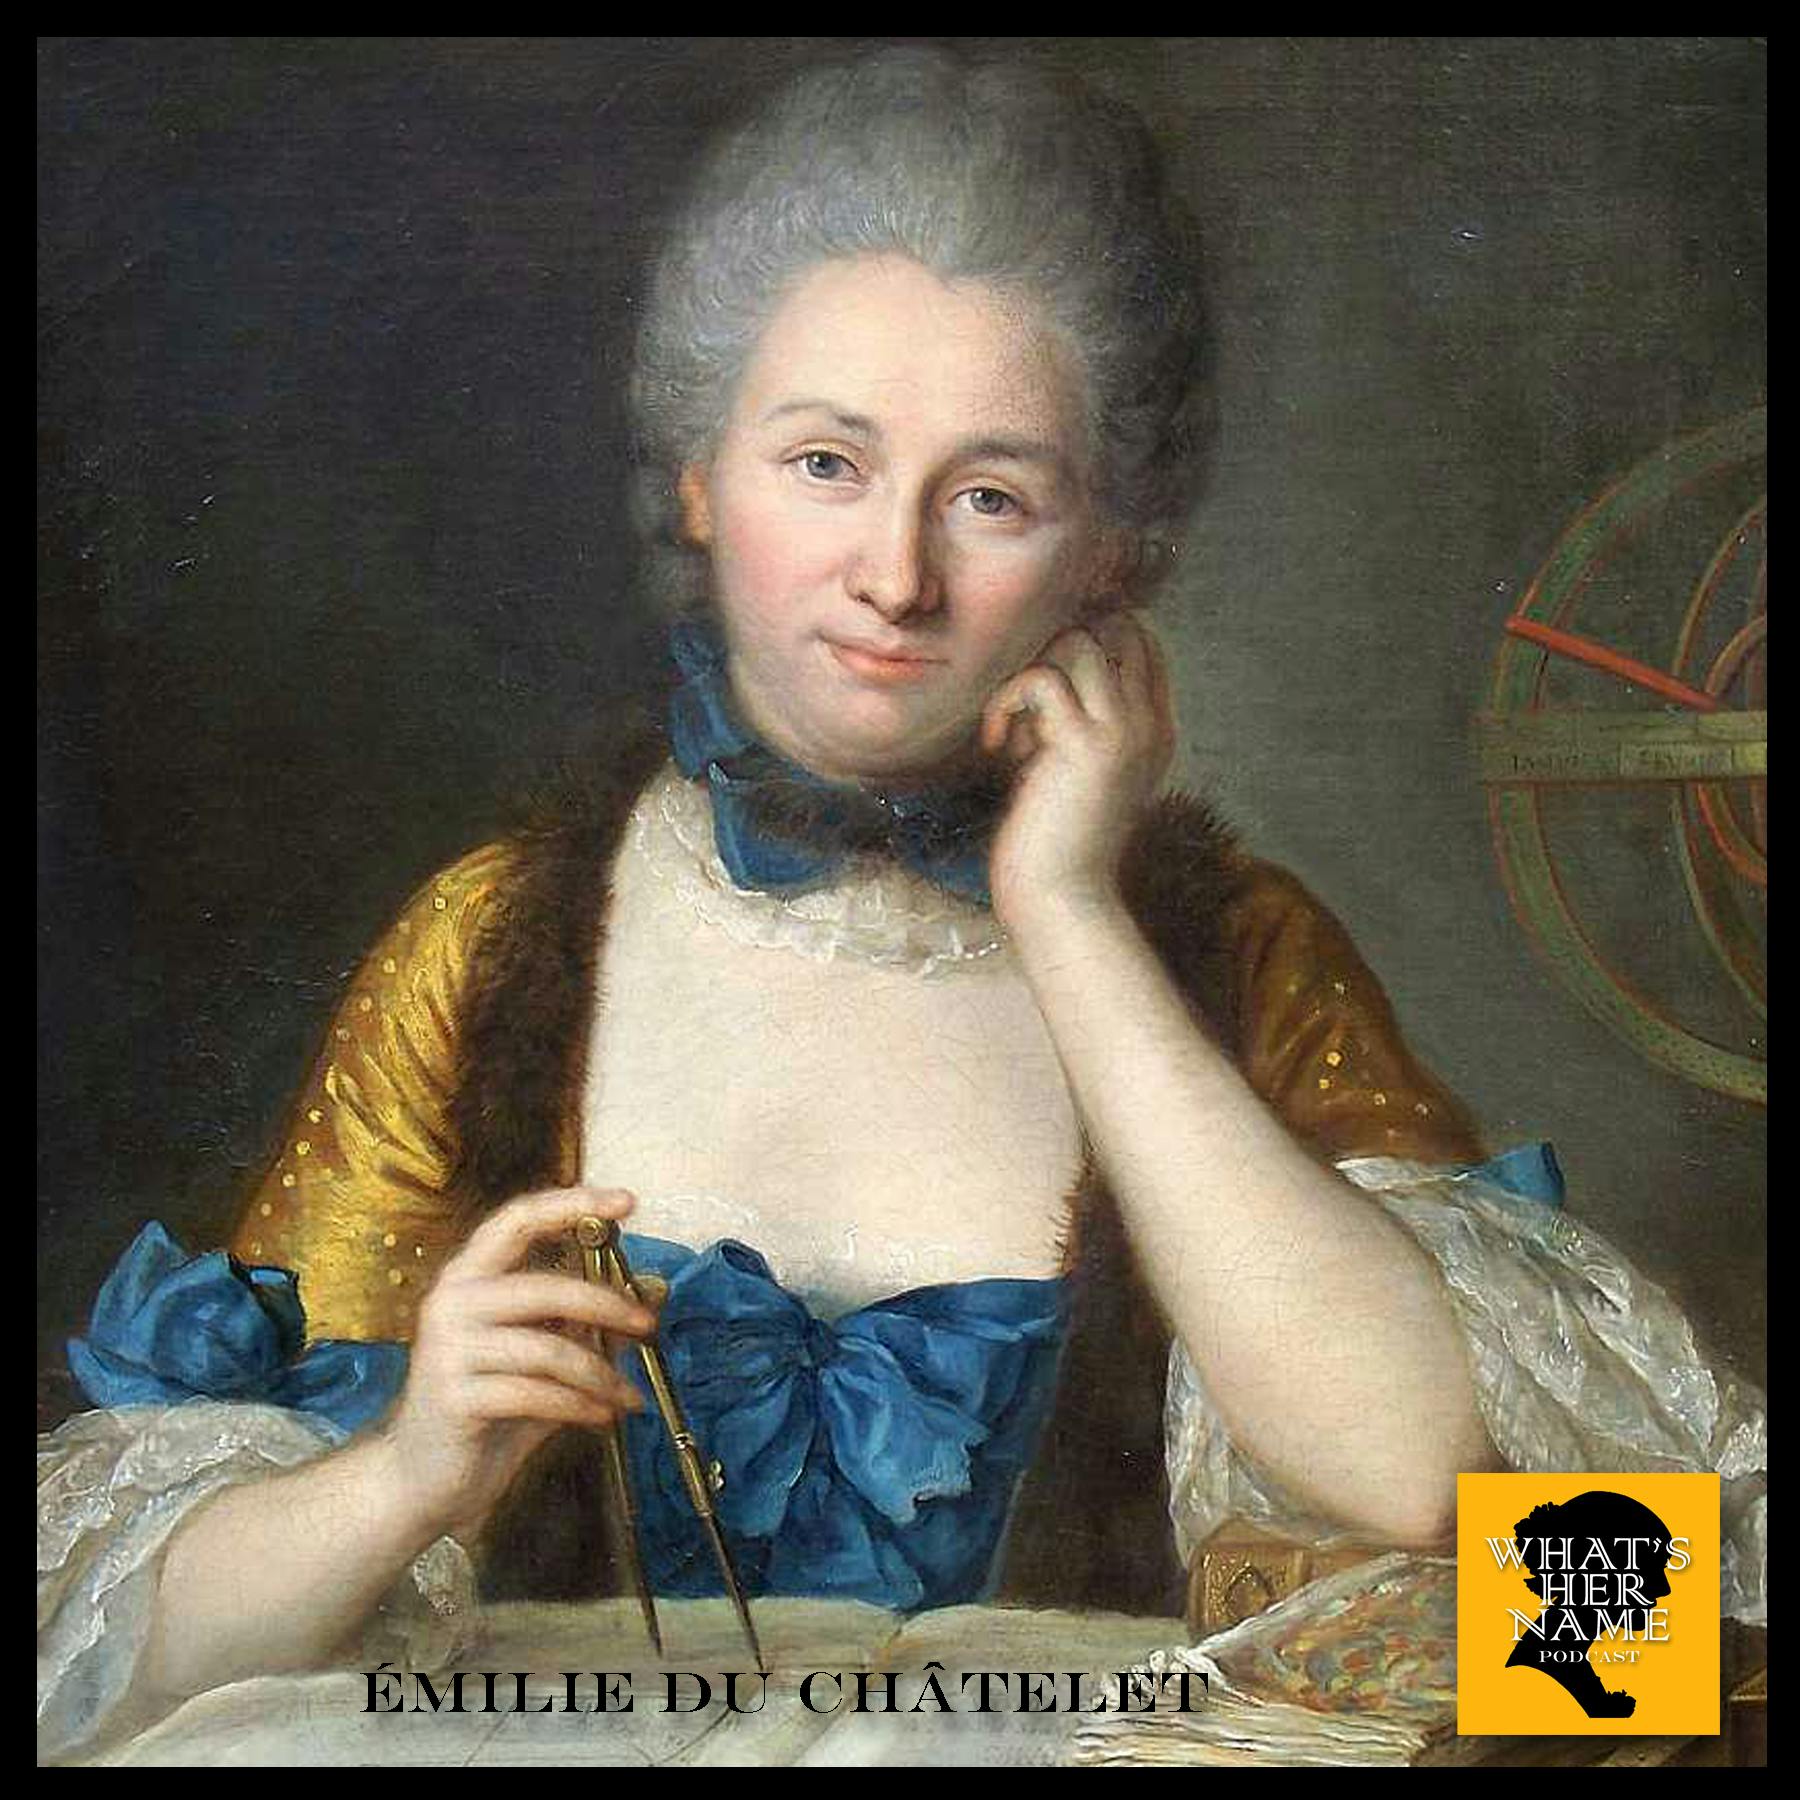 THE OPTIMIST Émilie du Châtelet